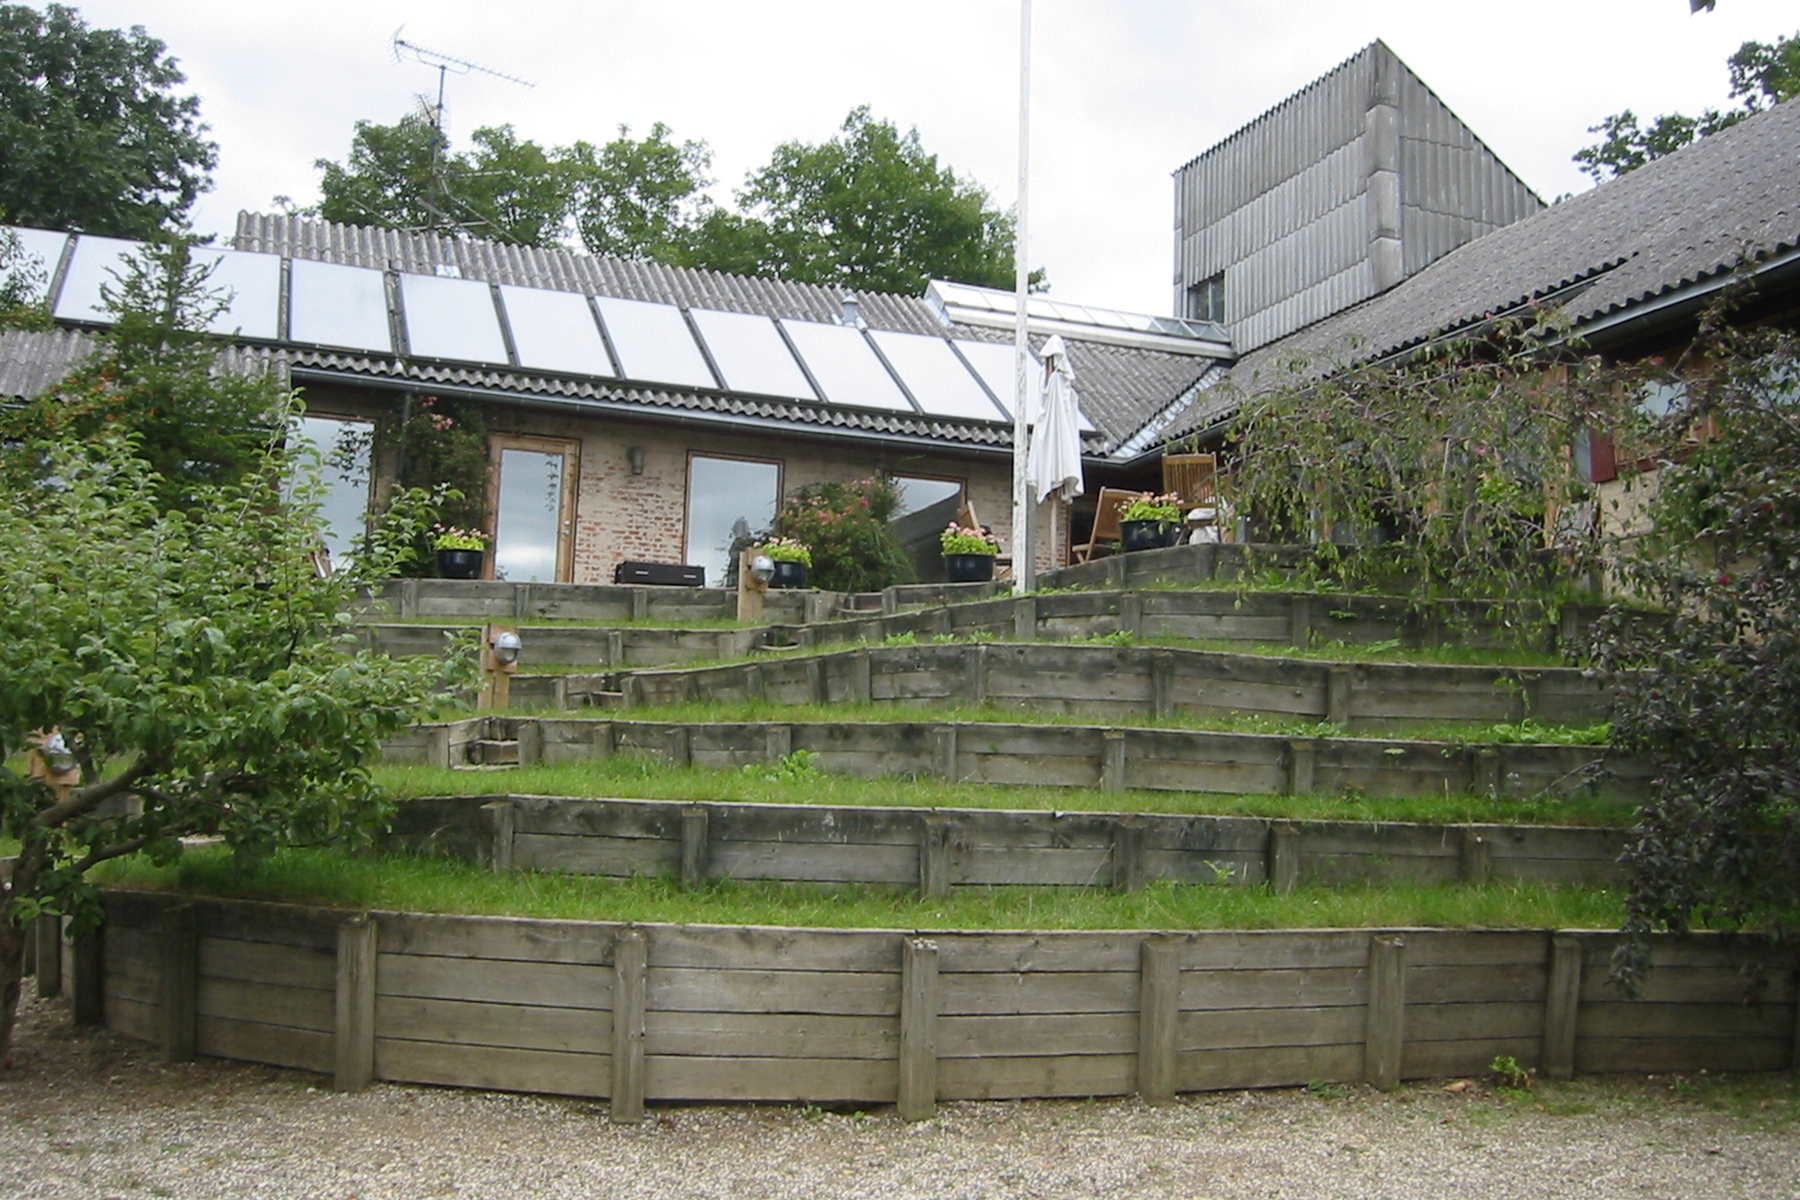   Trudeslund Cohousing  in Bikeroed, DK. Designed by Tegnestuen Vandkunsten 